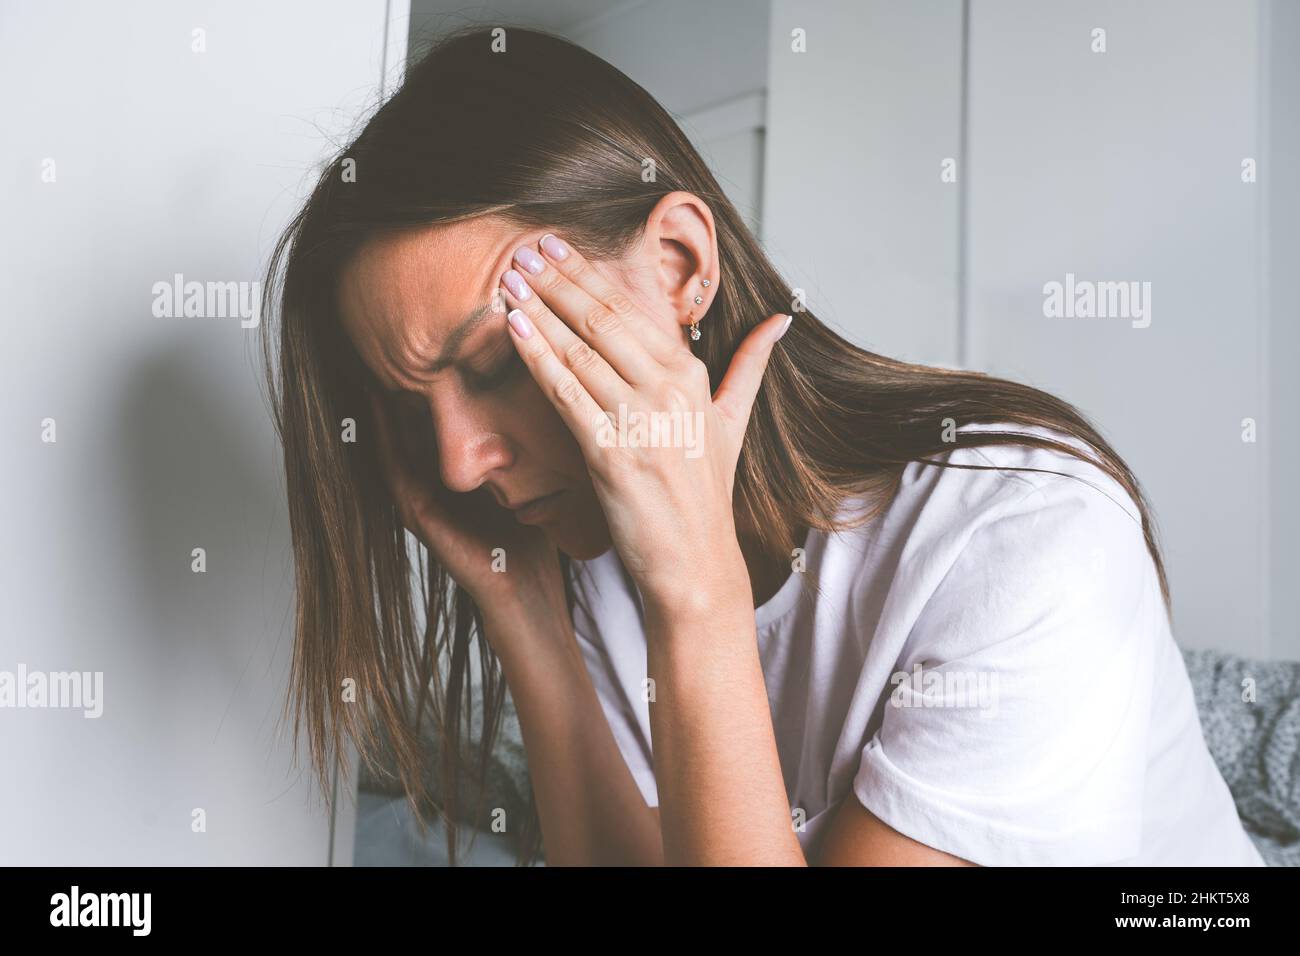 Junge Frau, die ihre Schläfe berührt und nach dem Aufwachen an Kopfschmerzen, Kopfschmerzen oder Migräne leidet Stockfoto